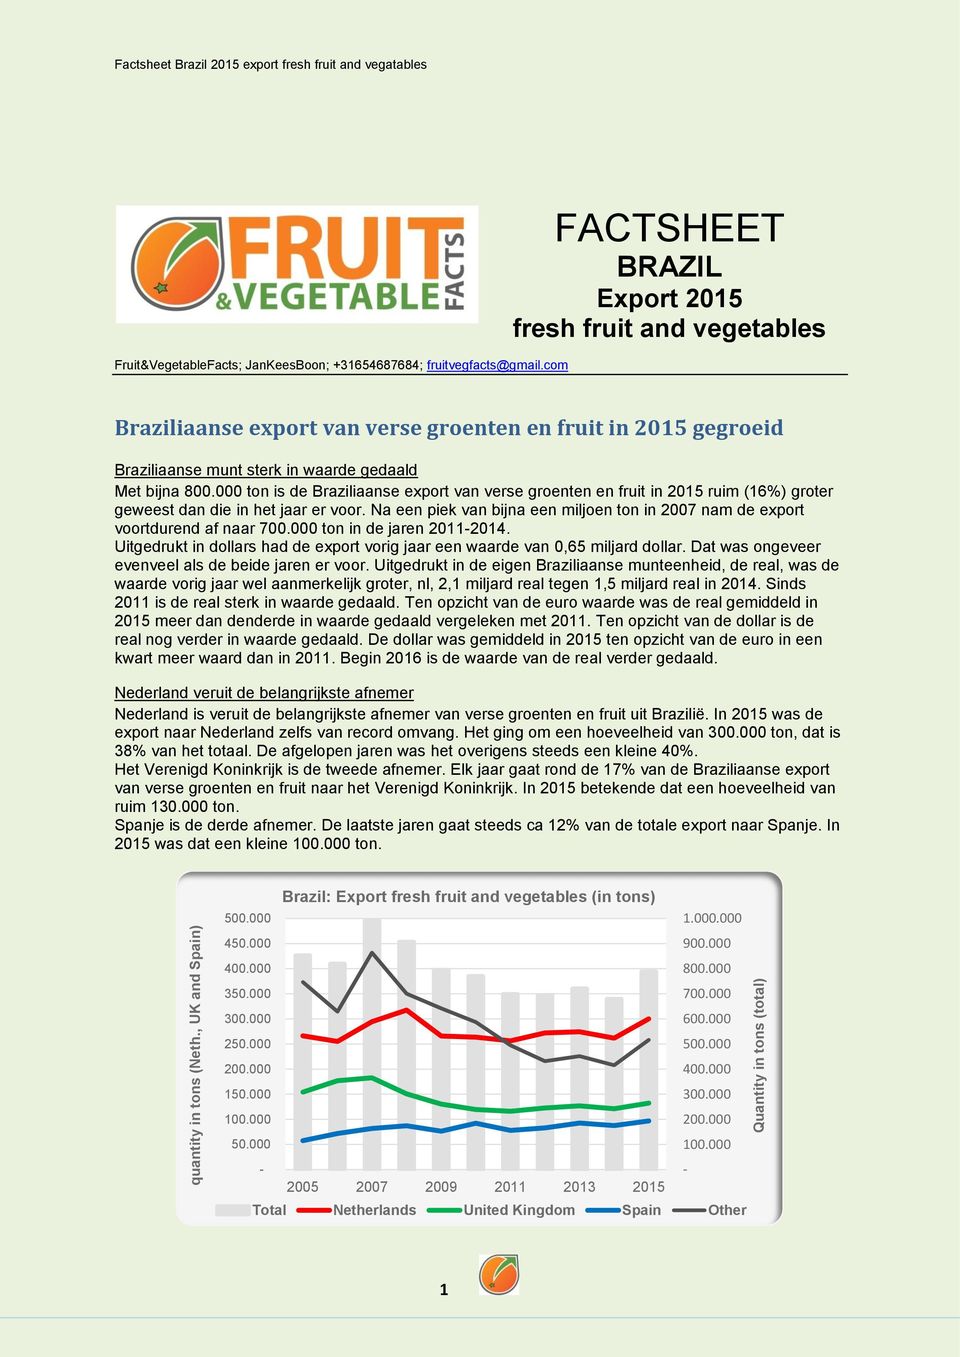 000 ton is de Braziliaanse export van verse groenten en fruit in 2015 ruim (16%) groter geweest dan die in het jaar er voor.